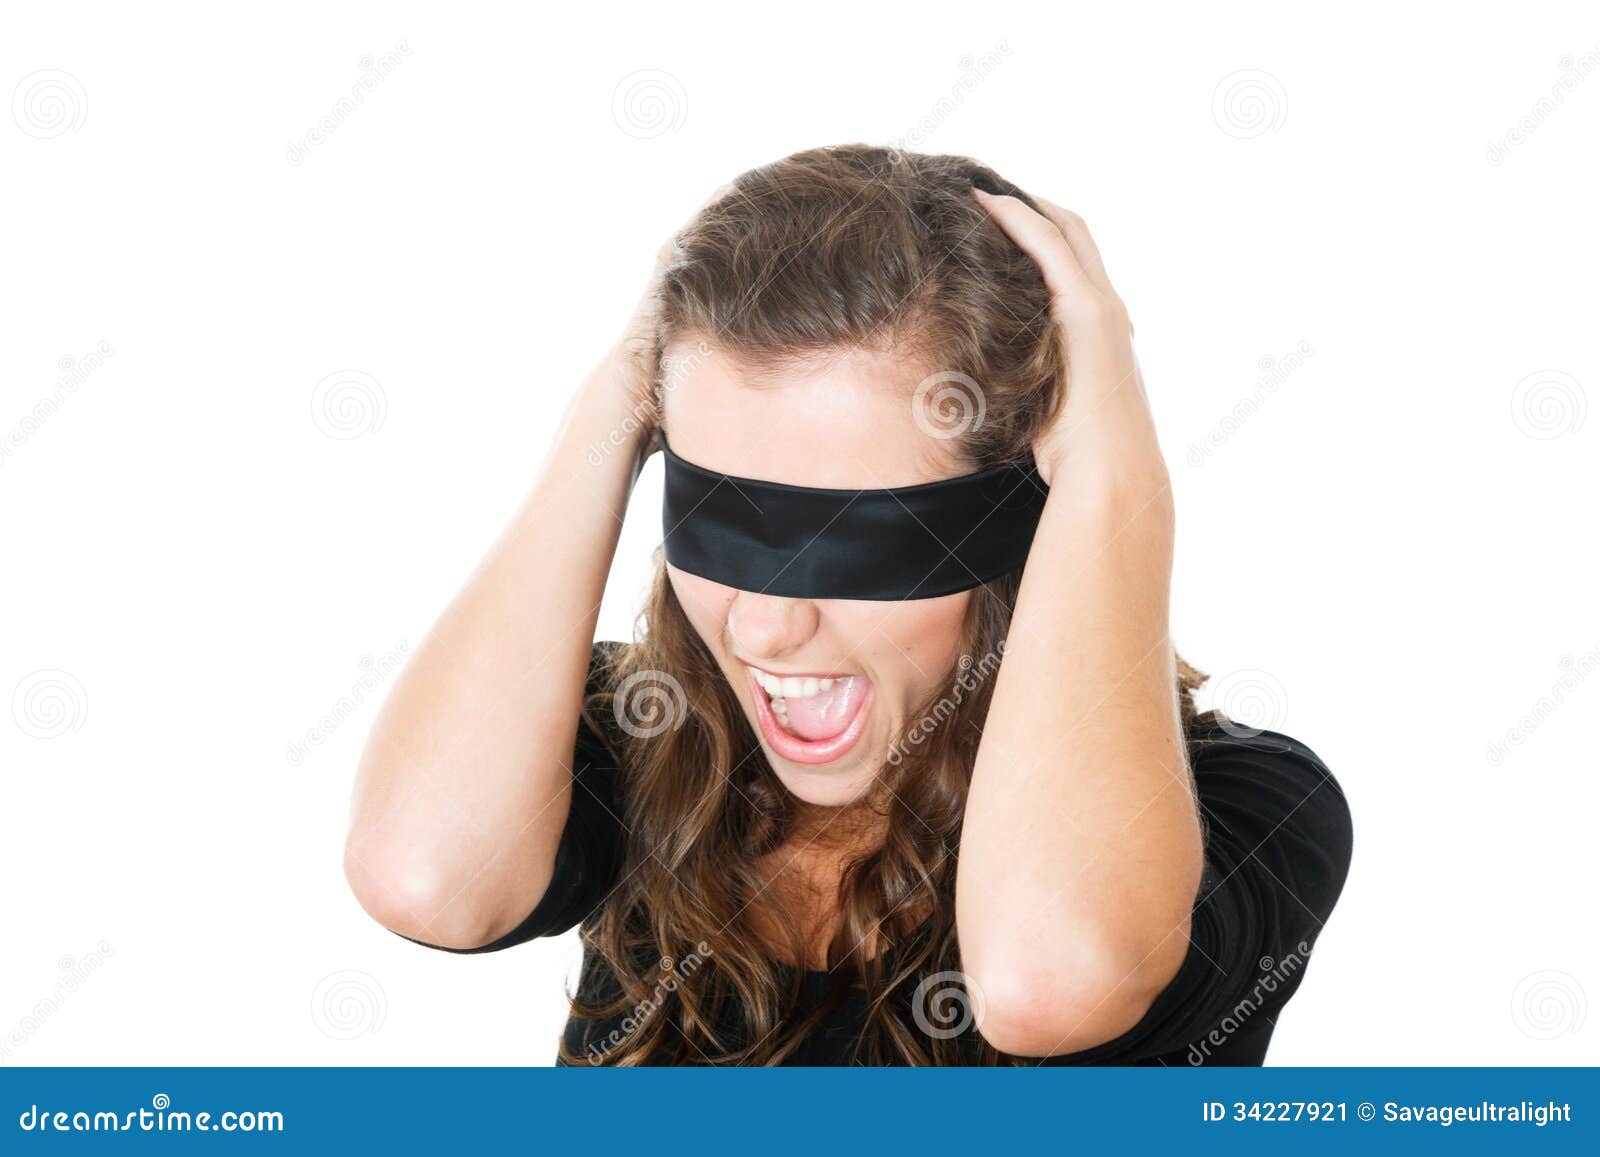 Beautiful Blindfolded Girl On Black Stock Photo 1110290966